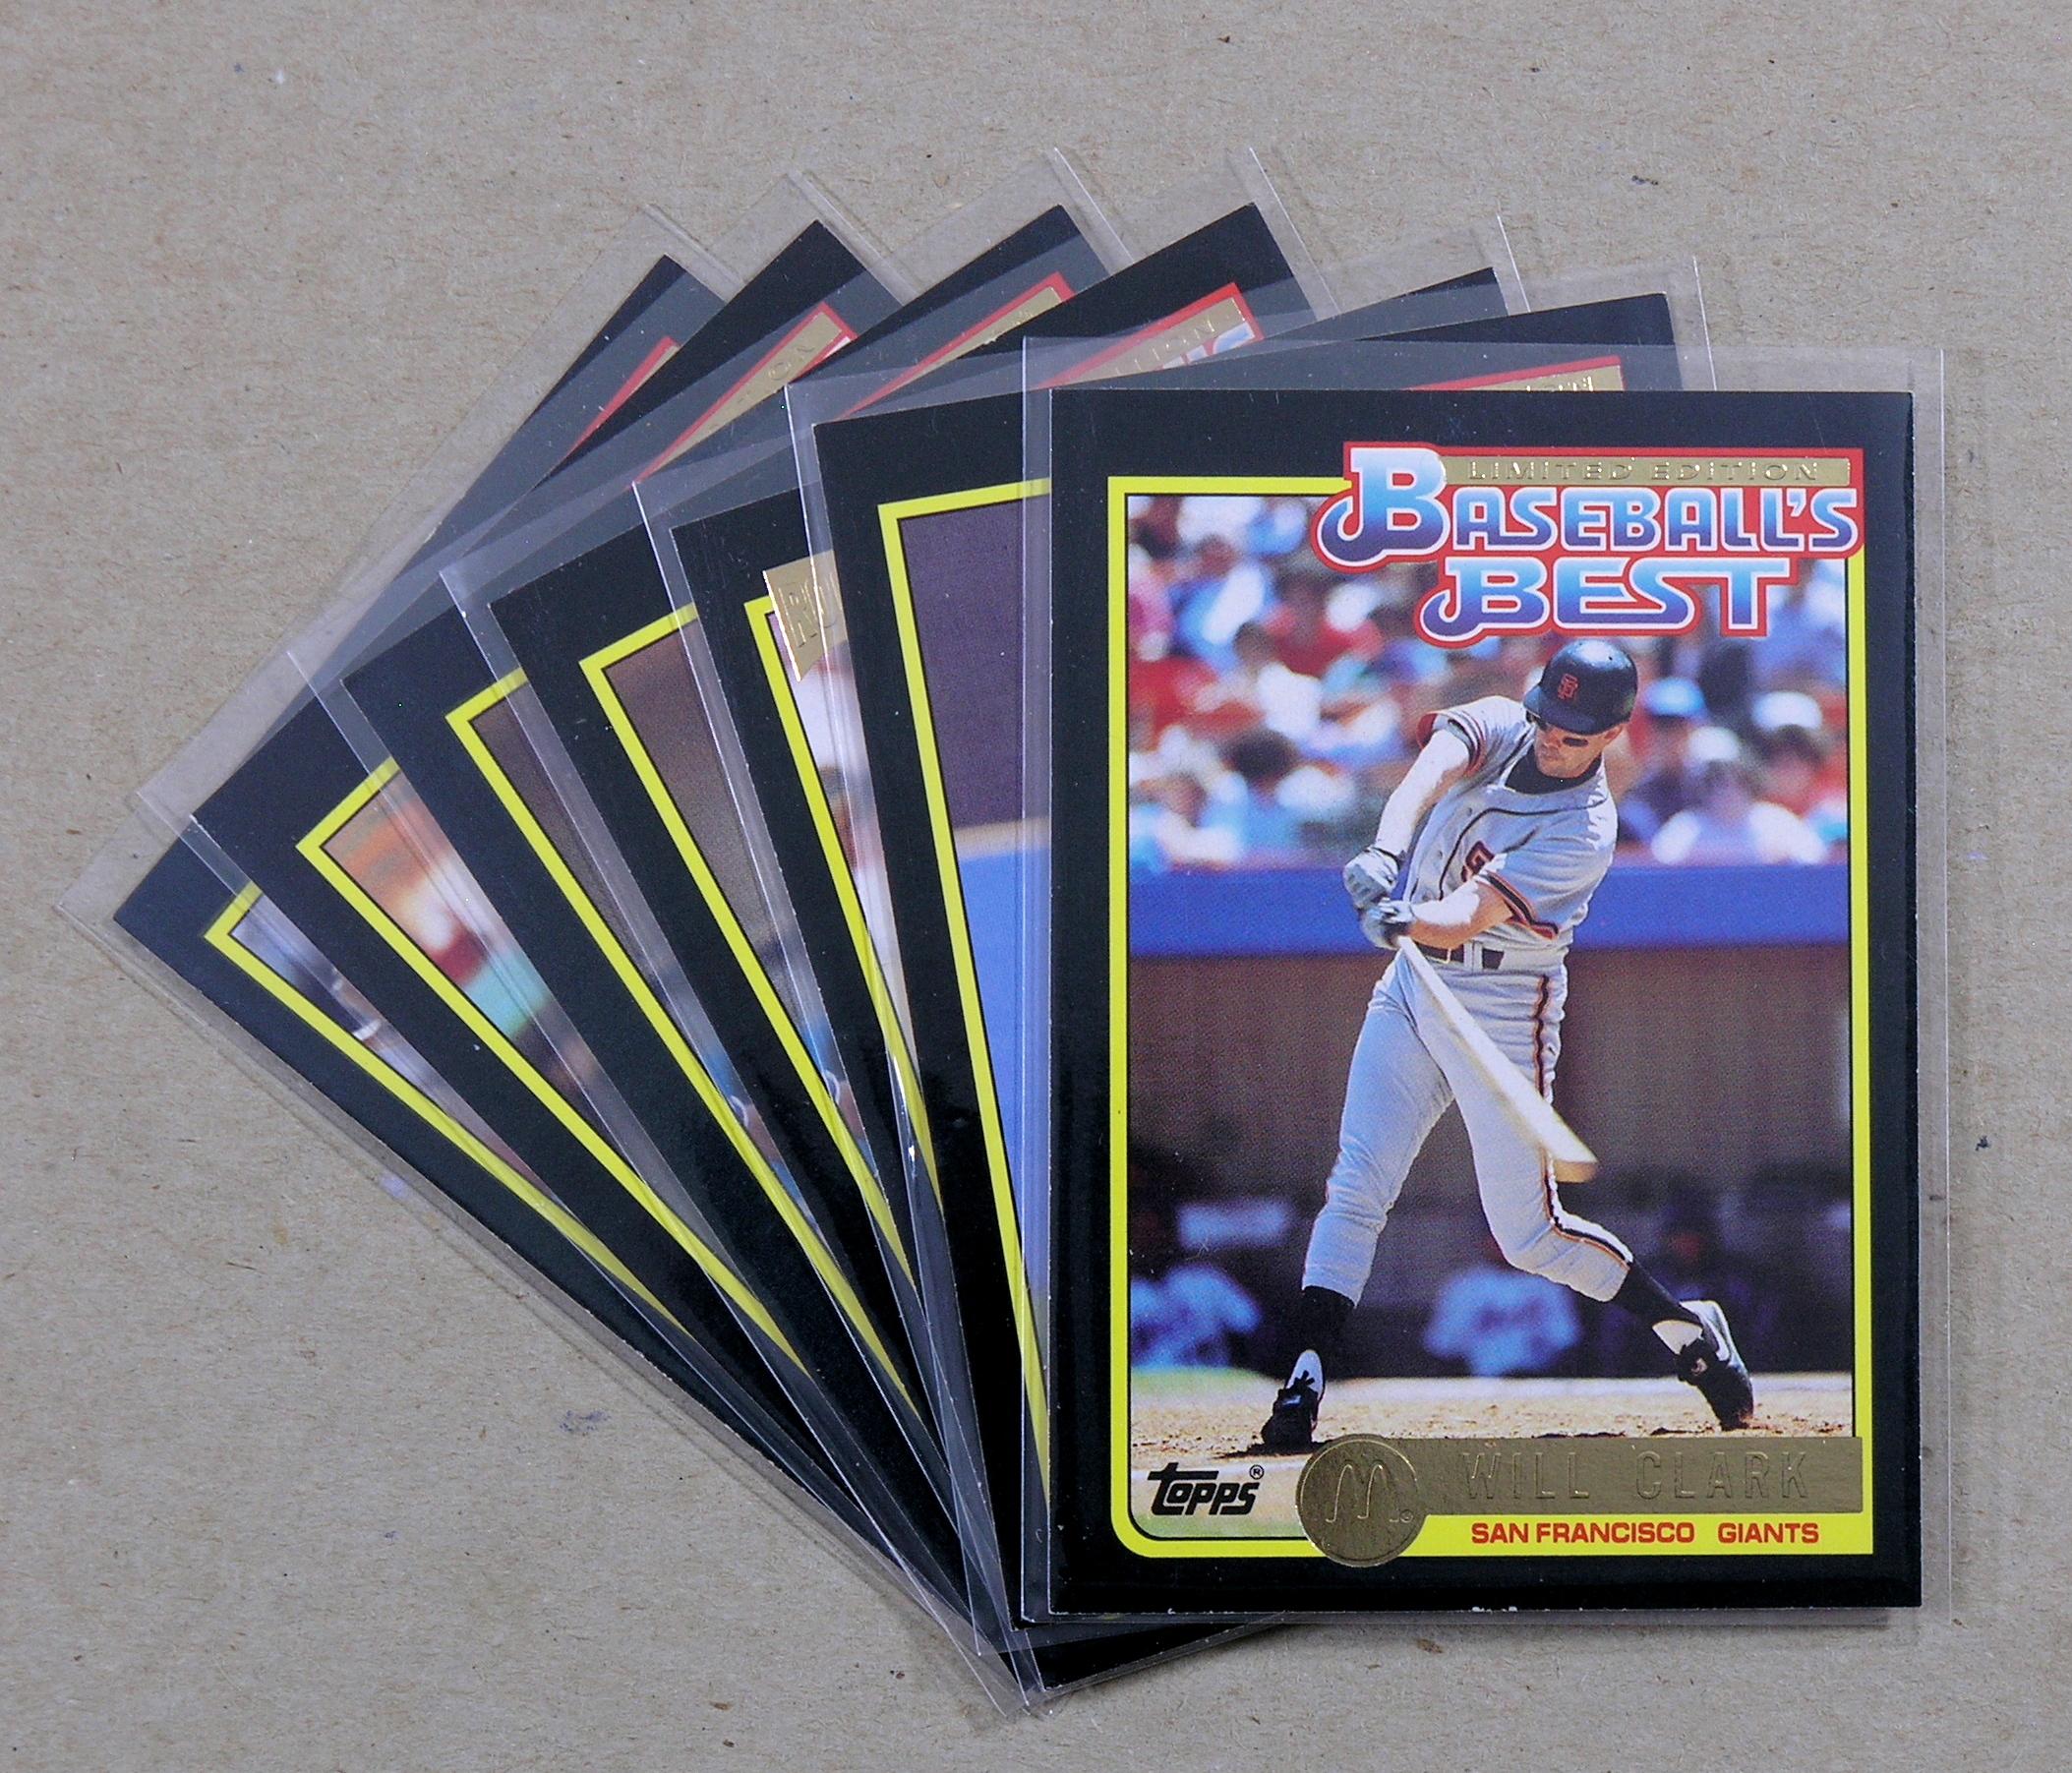 (7) 1992 Topps "McDonalds" Baseball Cards